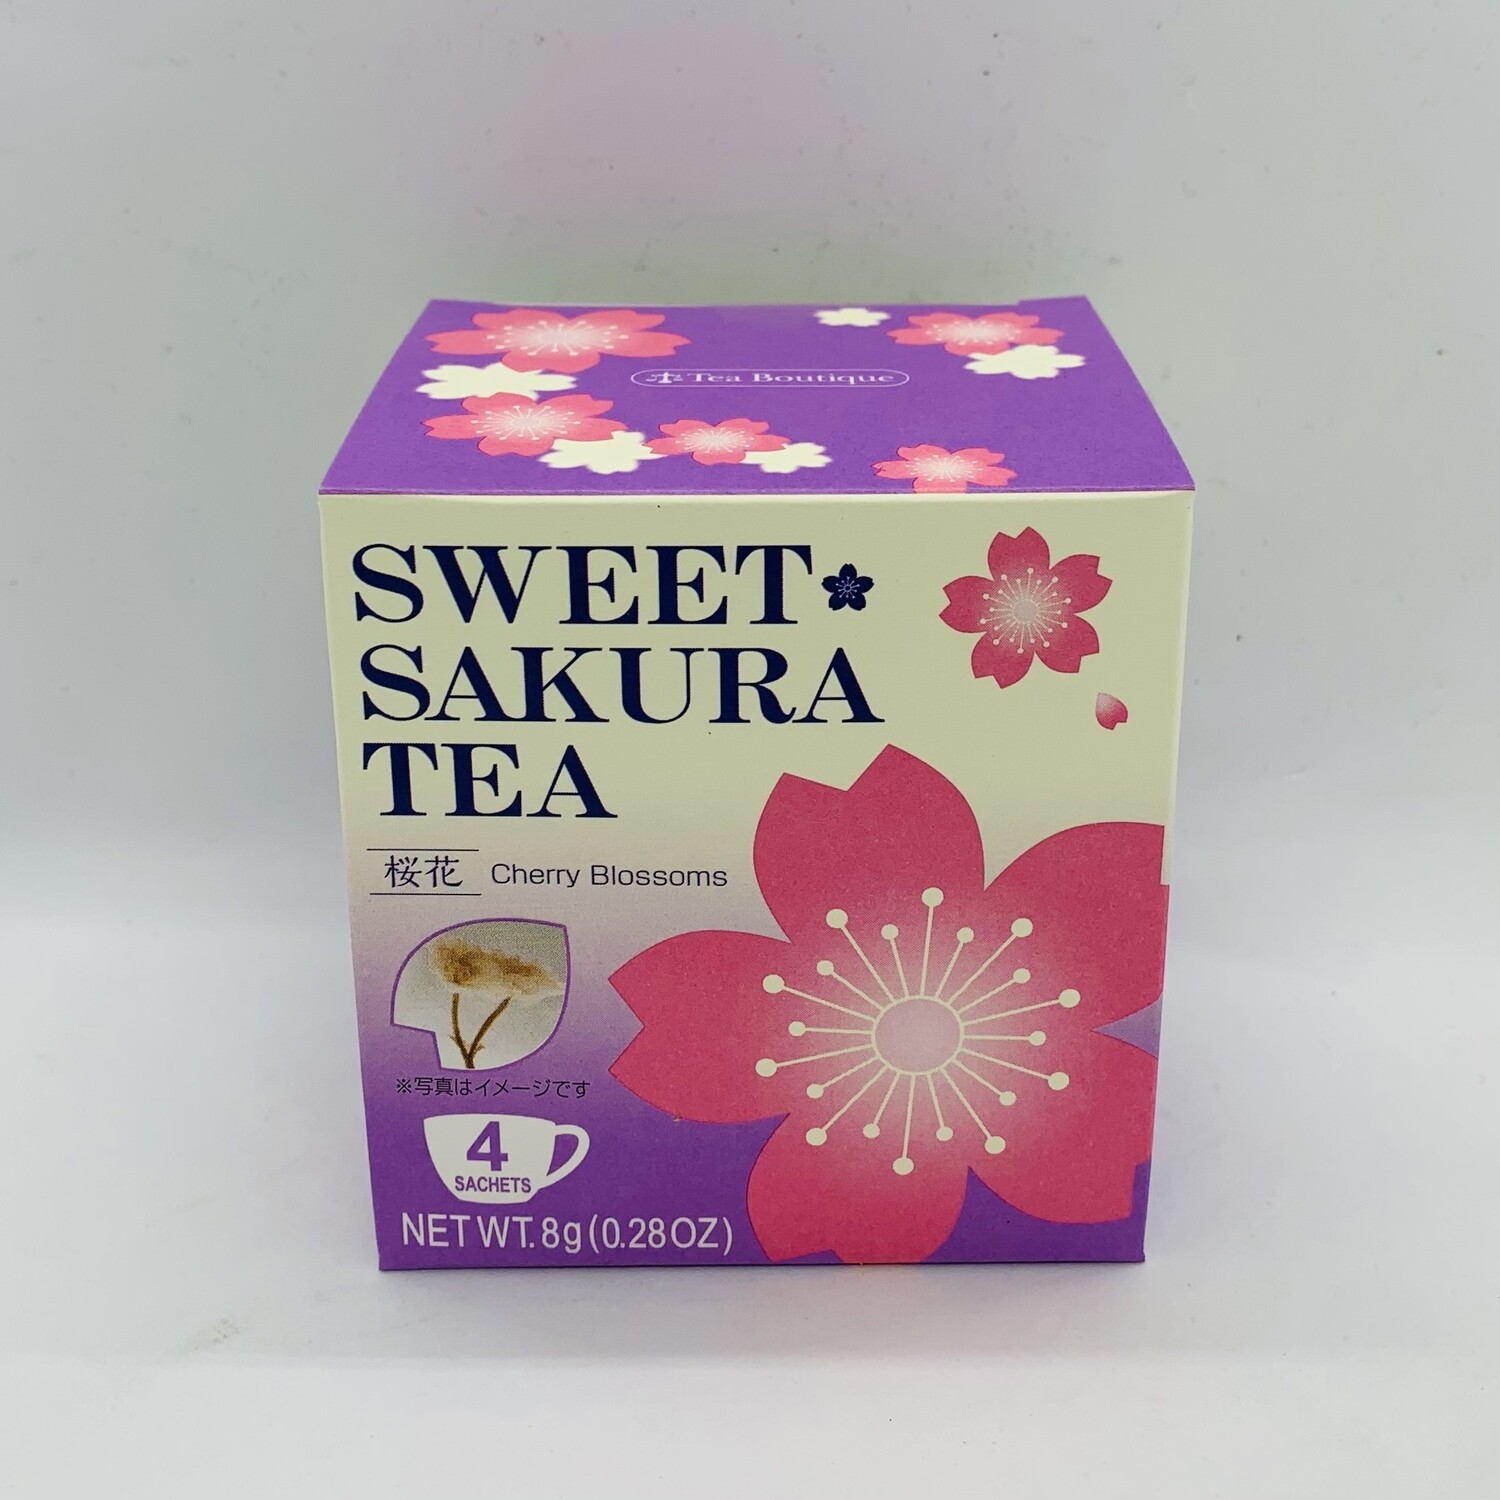 Sweet Sakura Tea